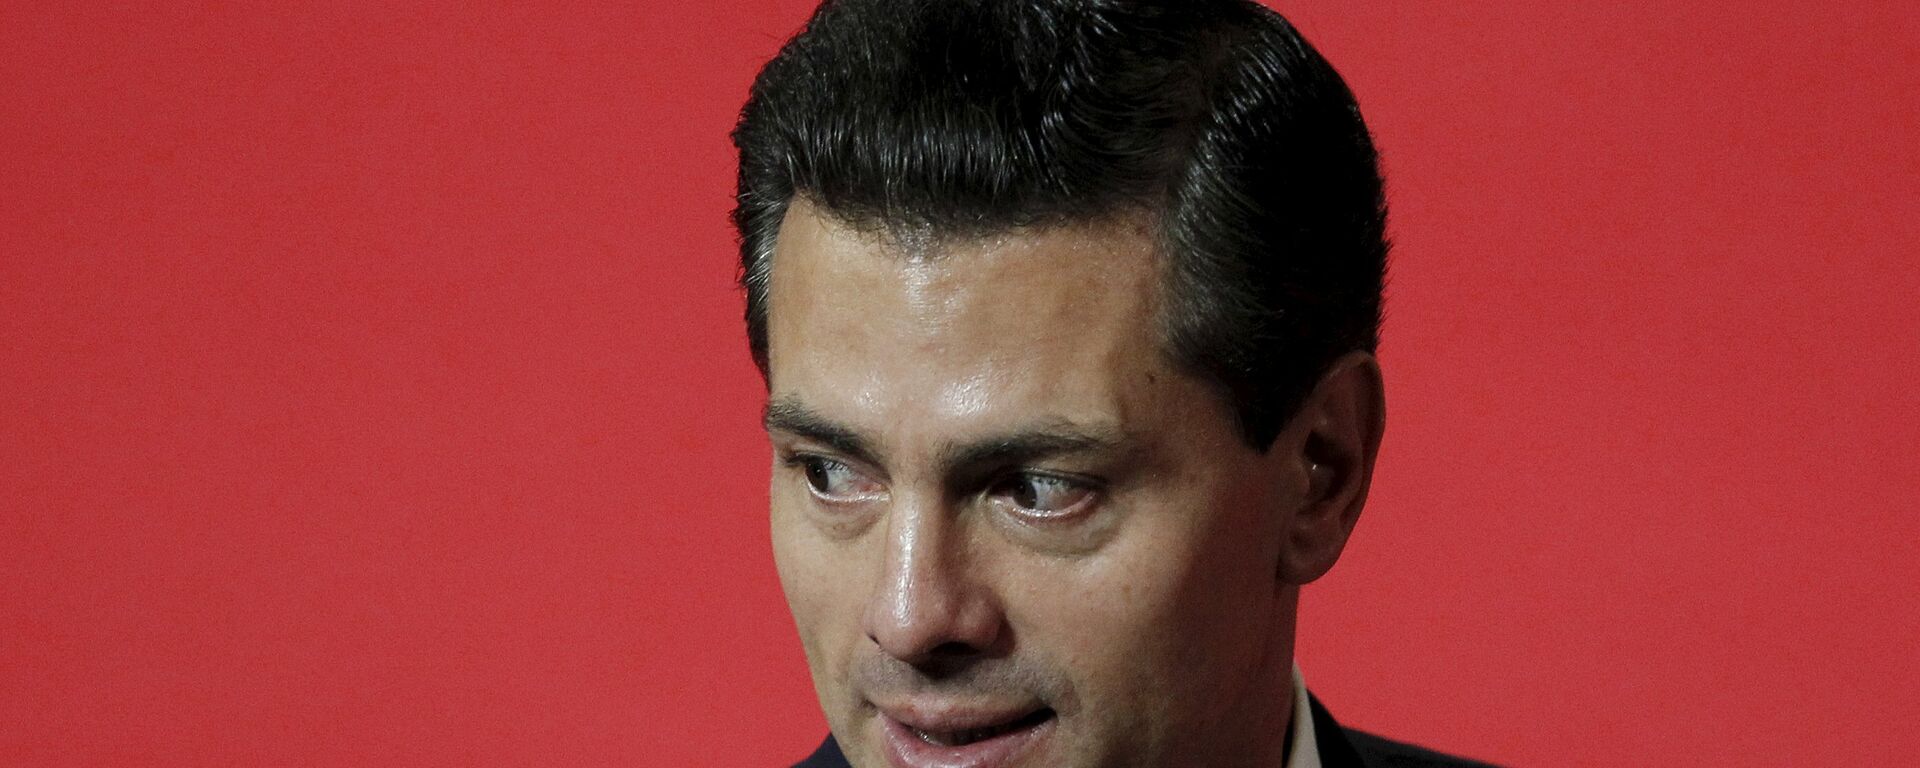 Enrique Peña Nieto, expresidente de México - Sputnik Mundo, 1920, 20.02.2020